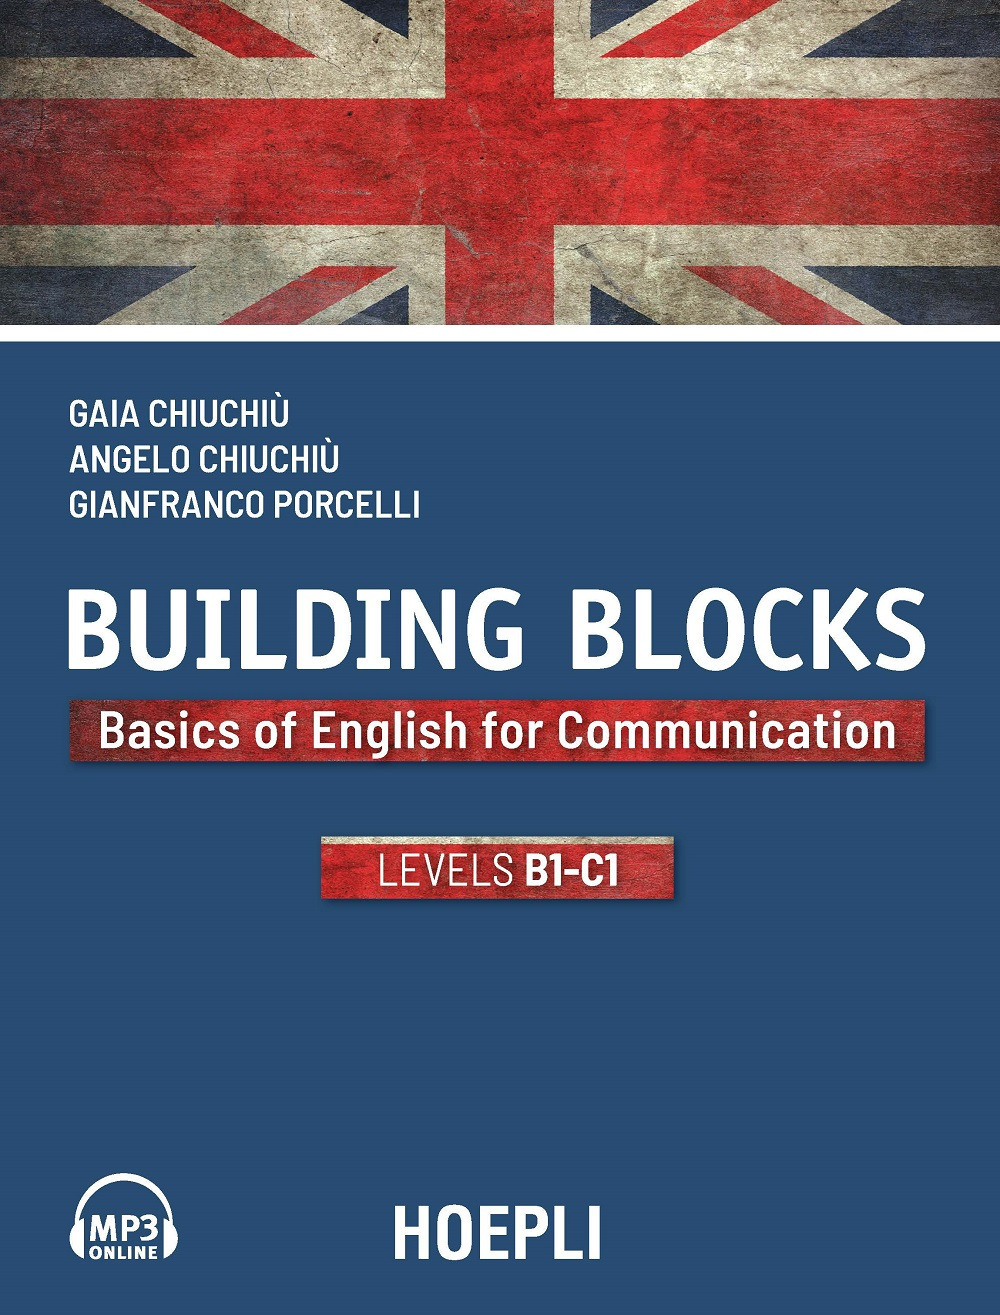 Building Blocks. Basics of English for Communication. Level B1-C1